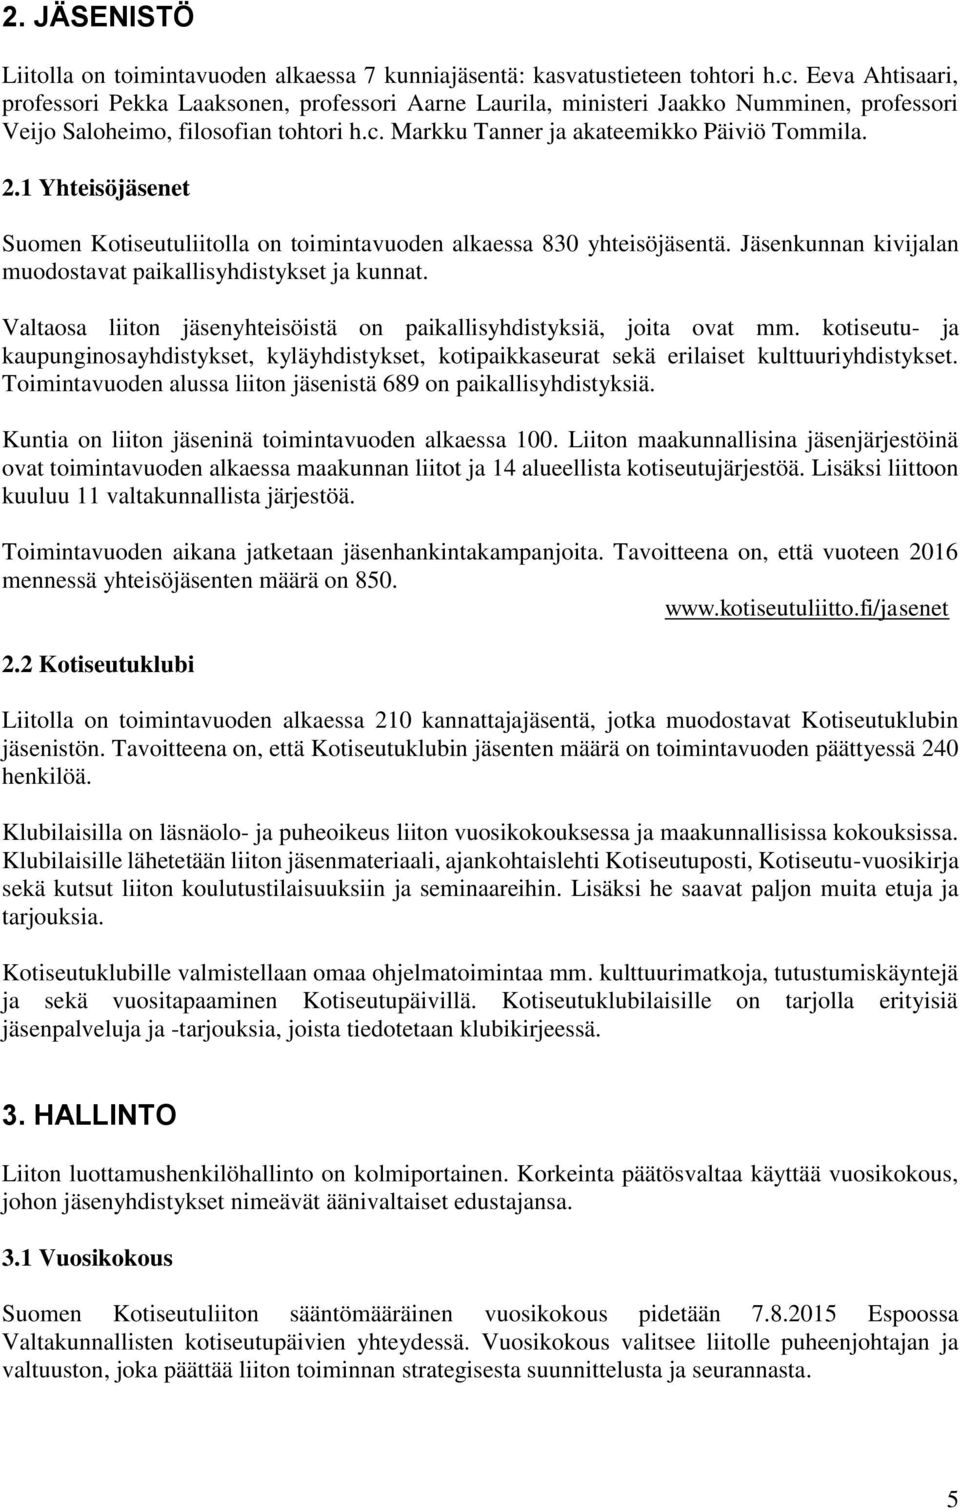 1 Yhteisöjäsenet Suomen Kotiseutuliitolla on toimintavuoden alkaessa 830 yhteisöjäsentä. Jäsenkunnan kivijalan muodostavat paikallisyhdistykset ja kunnat.